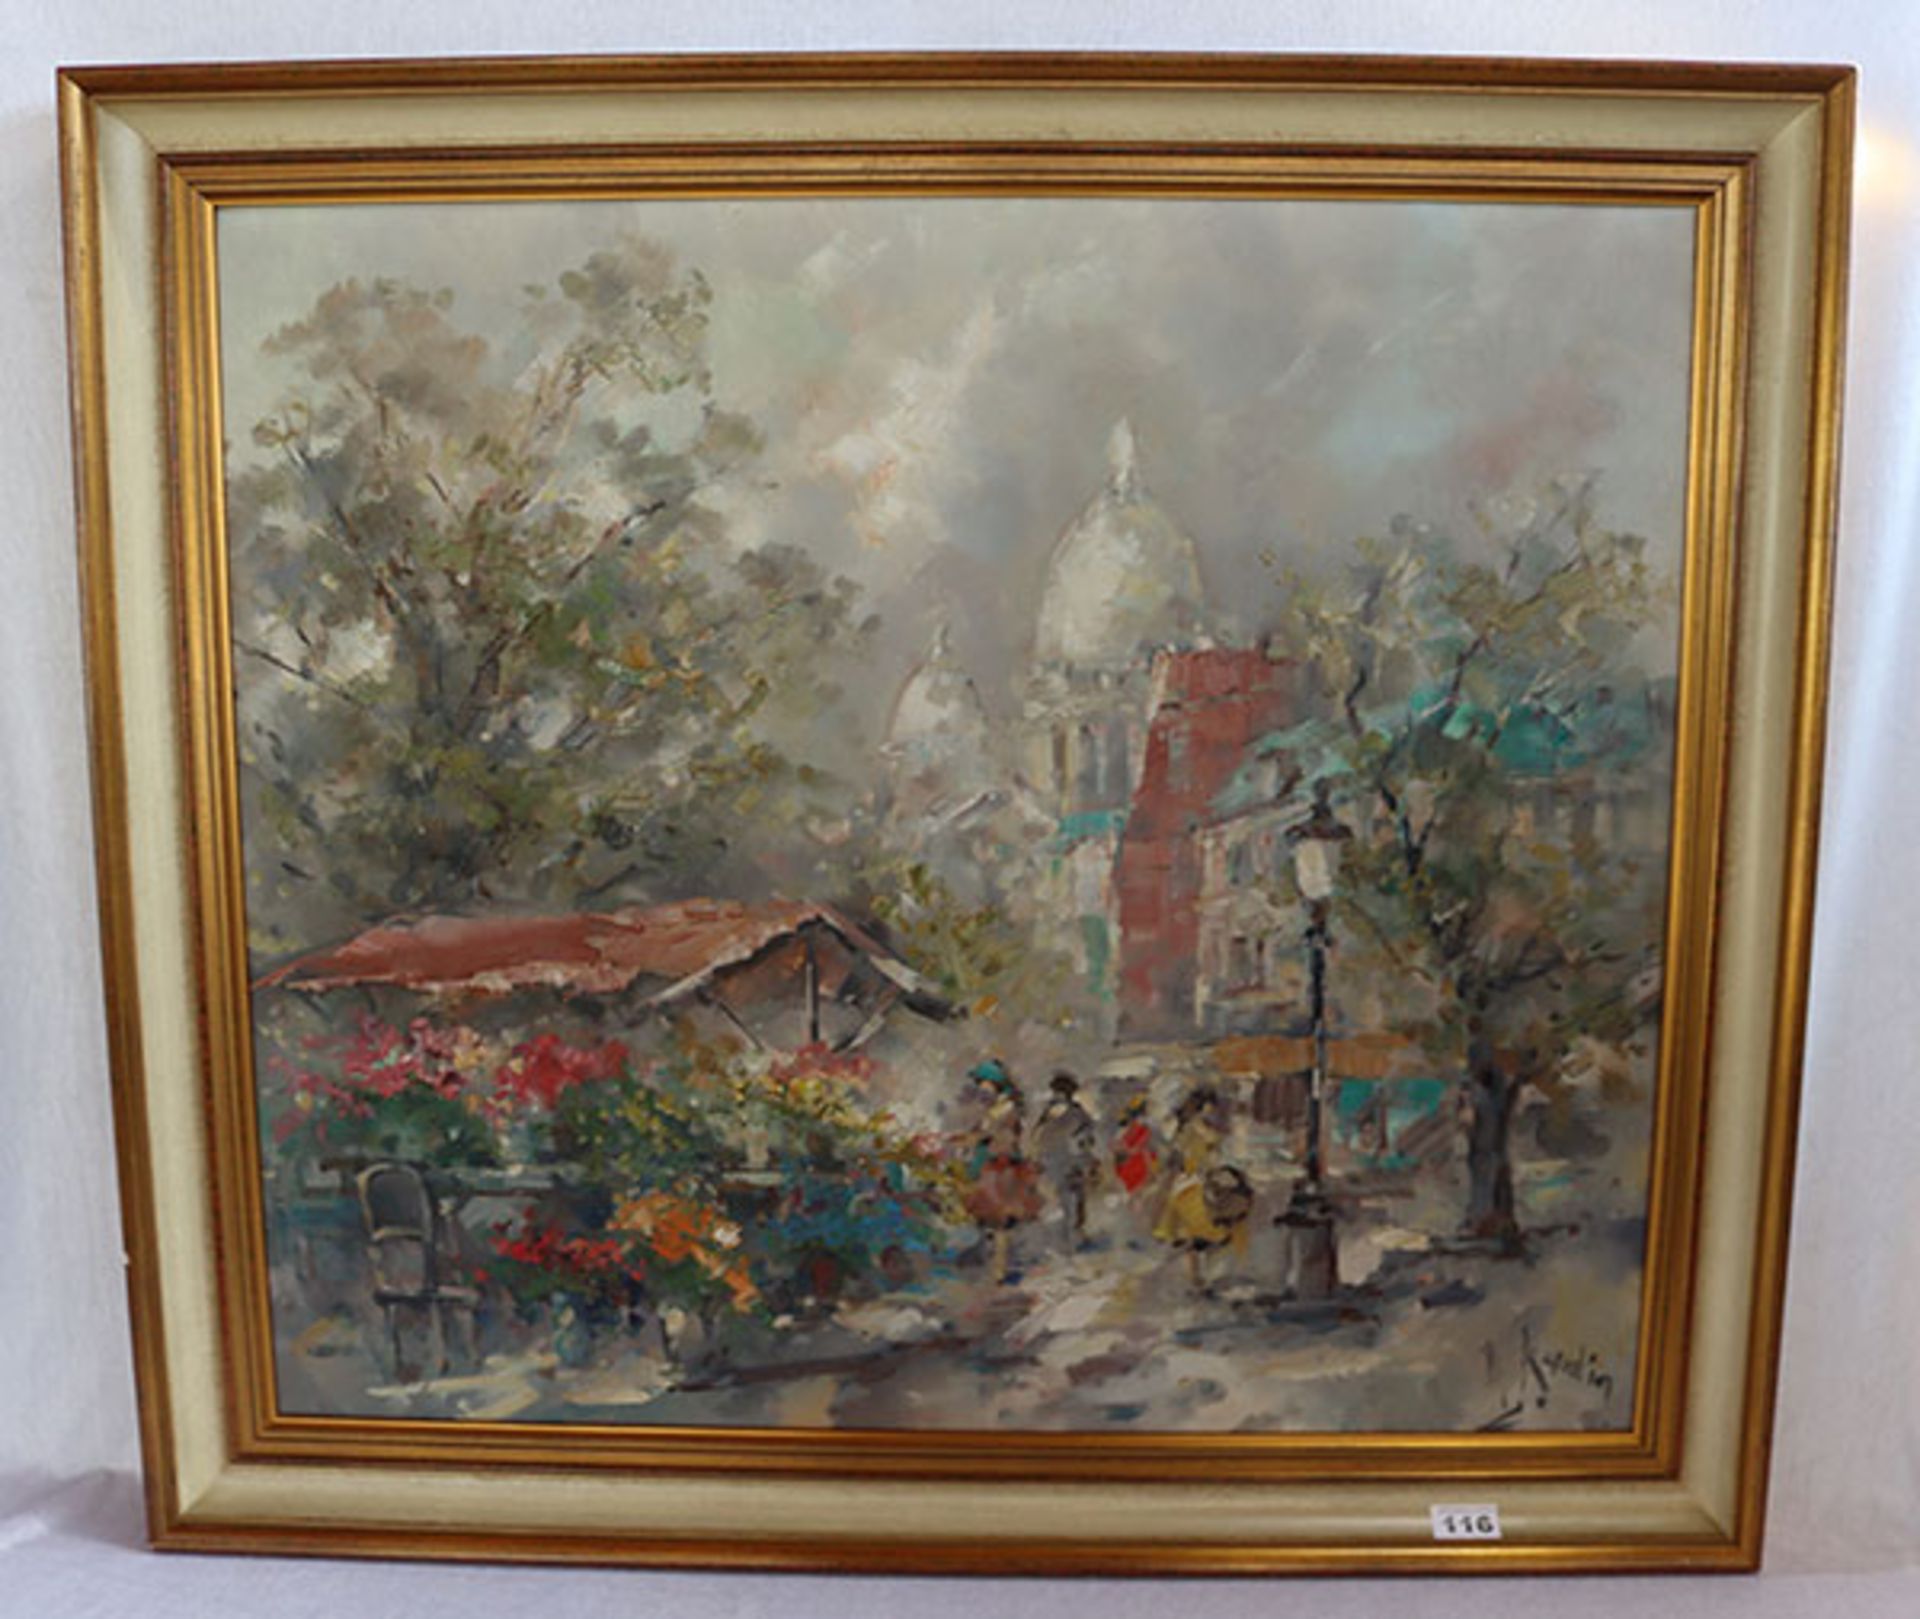 Gemälde ÖL/LW 'Pariser Blumenmarkt mit Sacre Coeur', signiert A. Kardin, Alexander Kardin, * 1917